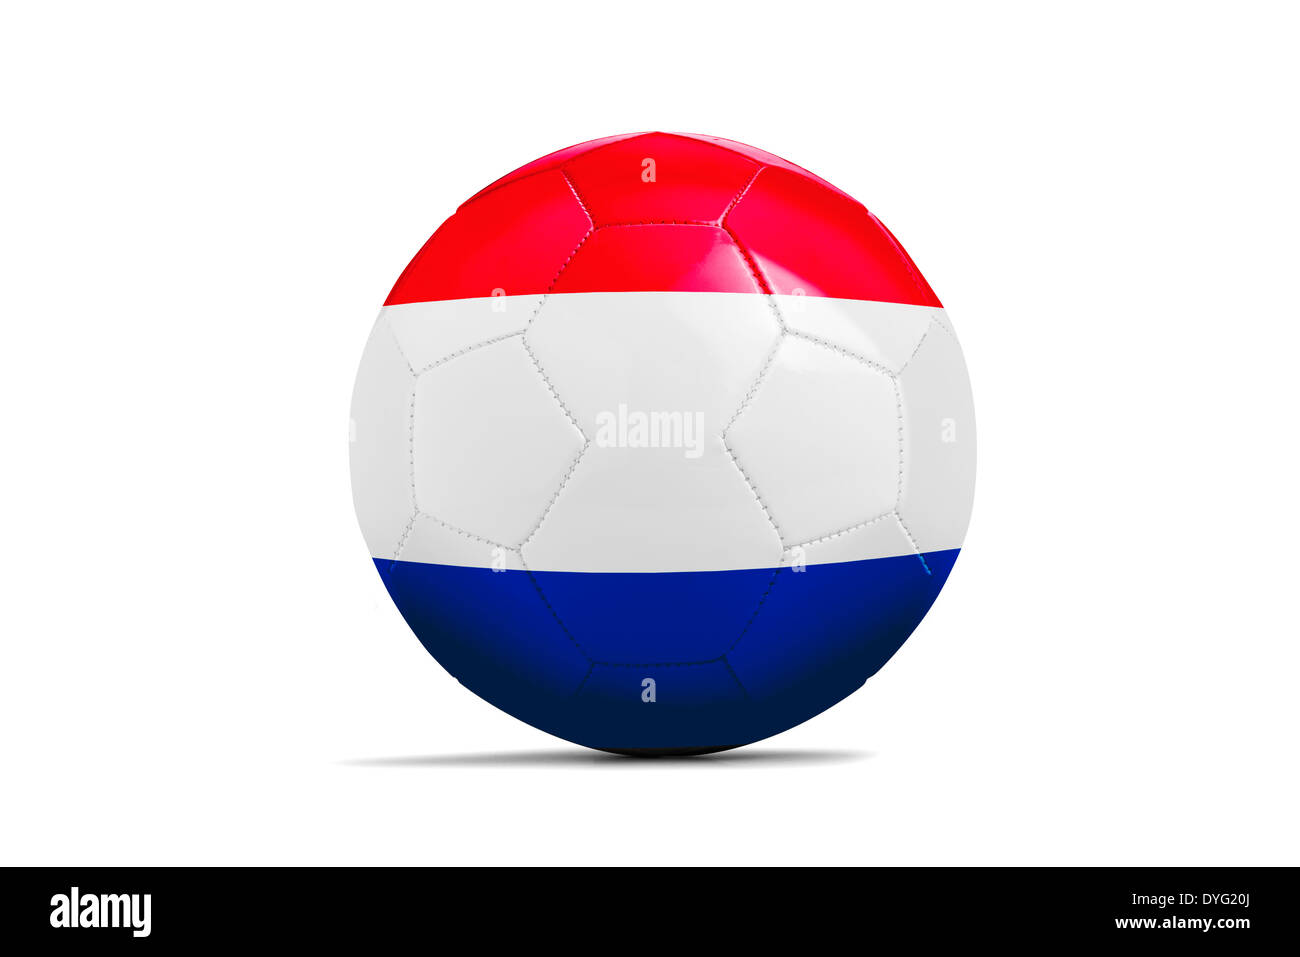 Des ballons de foot avec des équipes de football Brésil drapeaux, 2014. Groupe B, Pays-Bas Banque D'Images